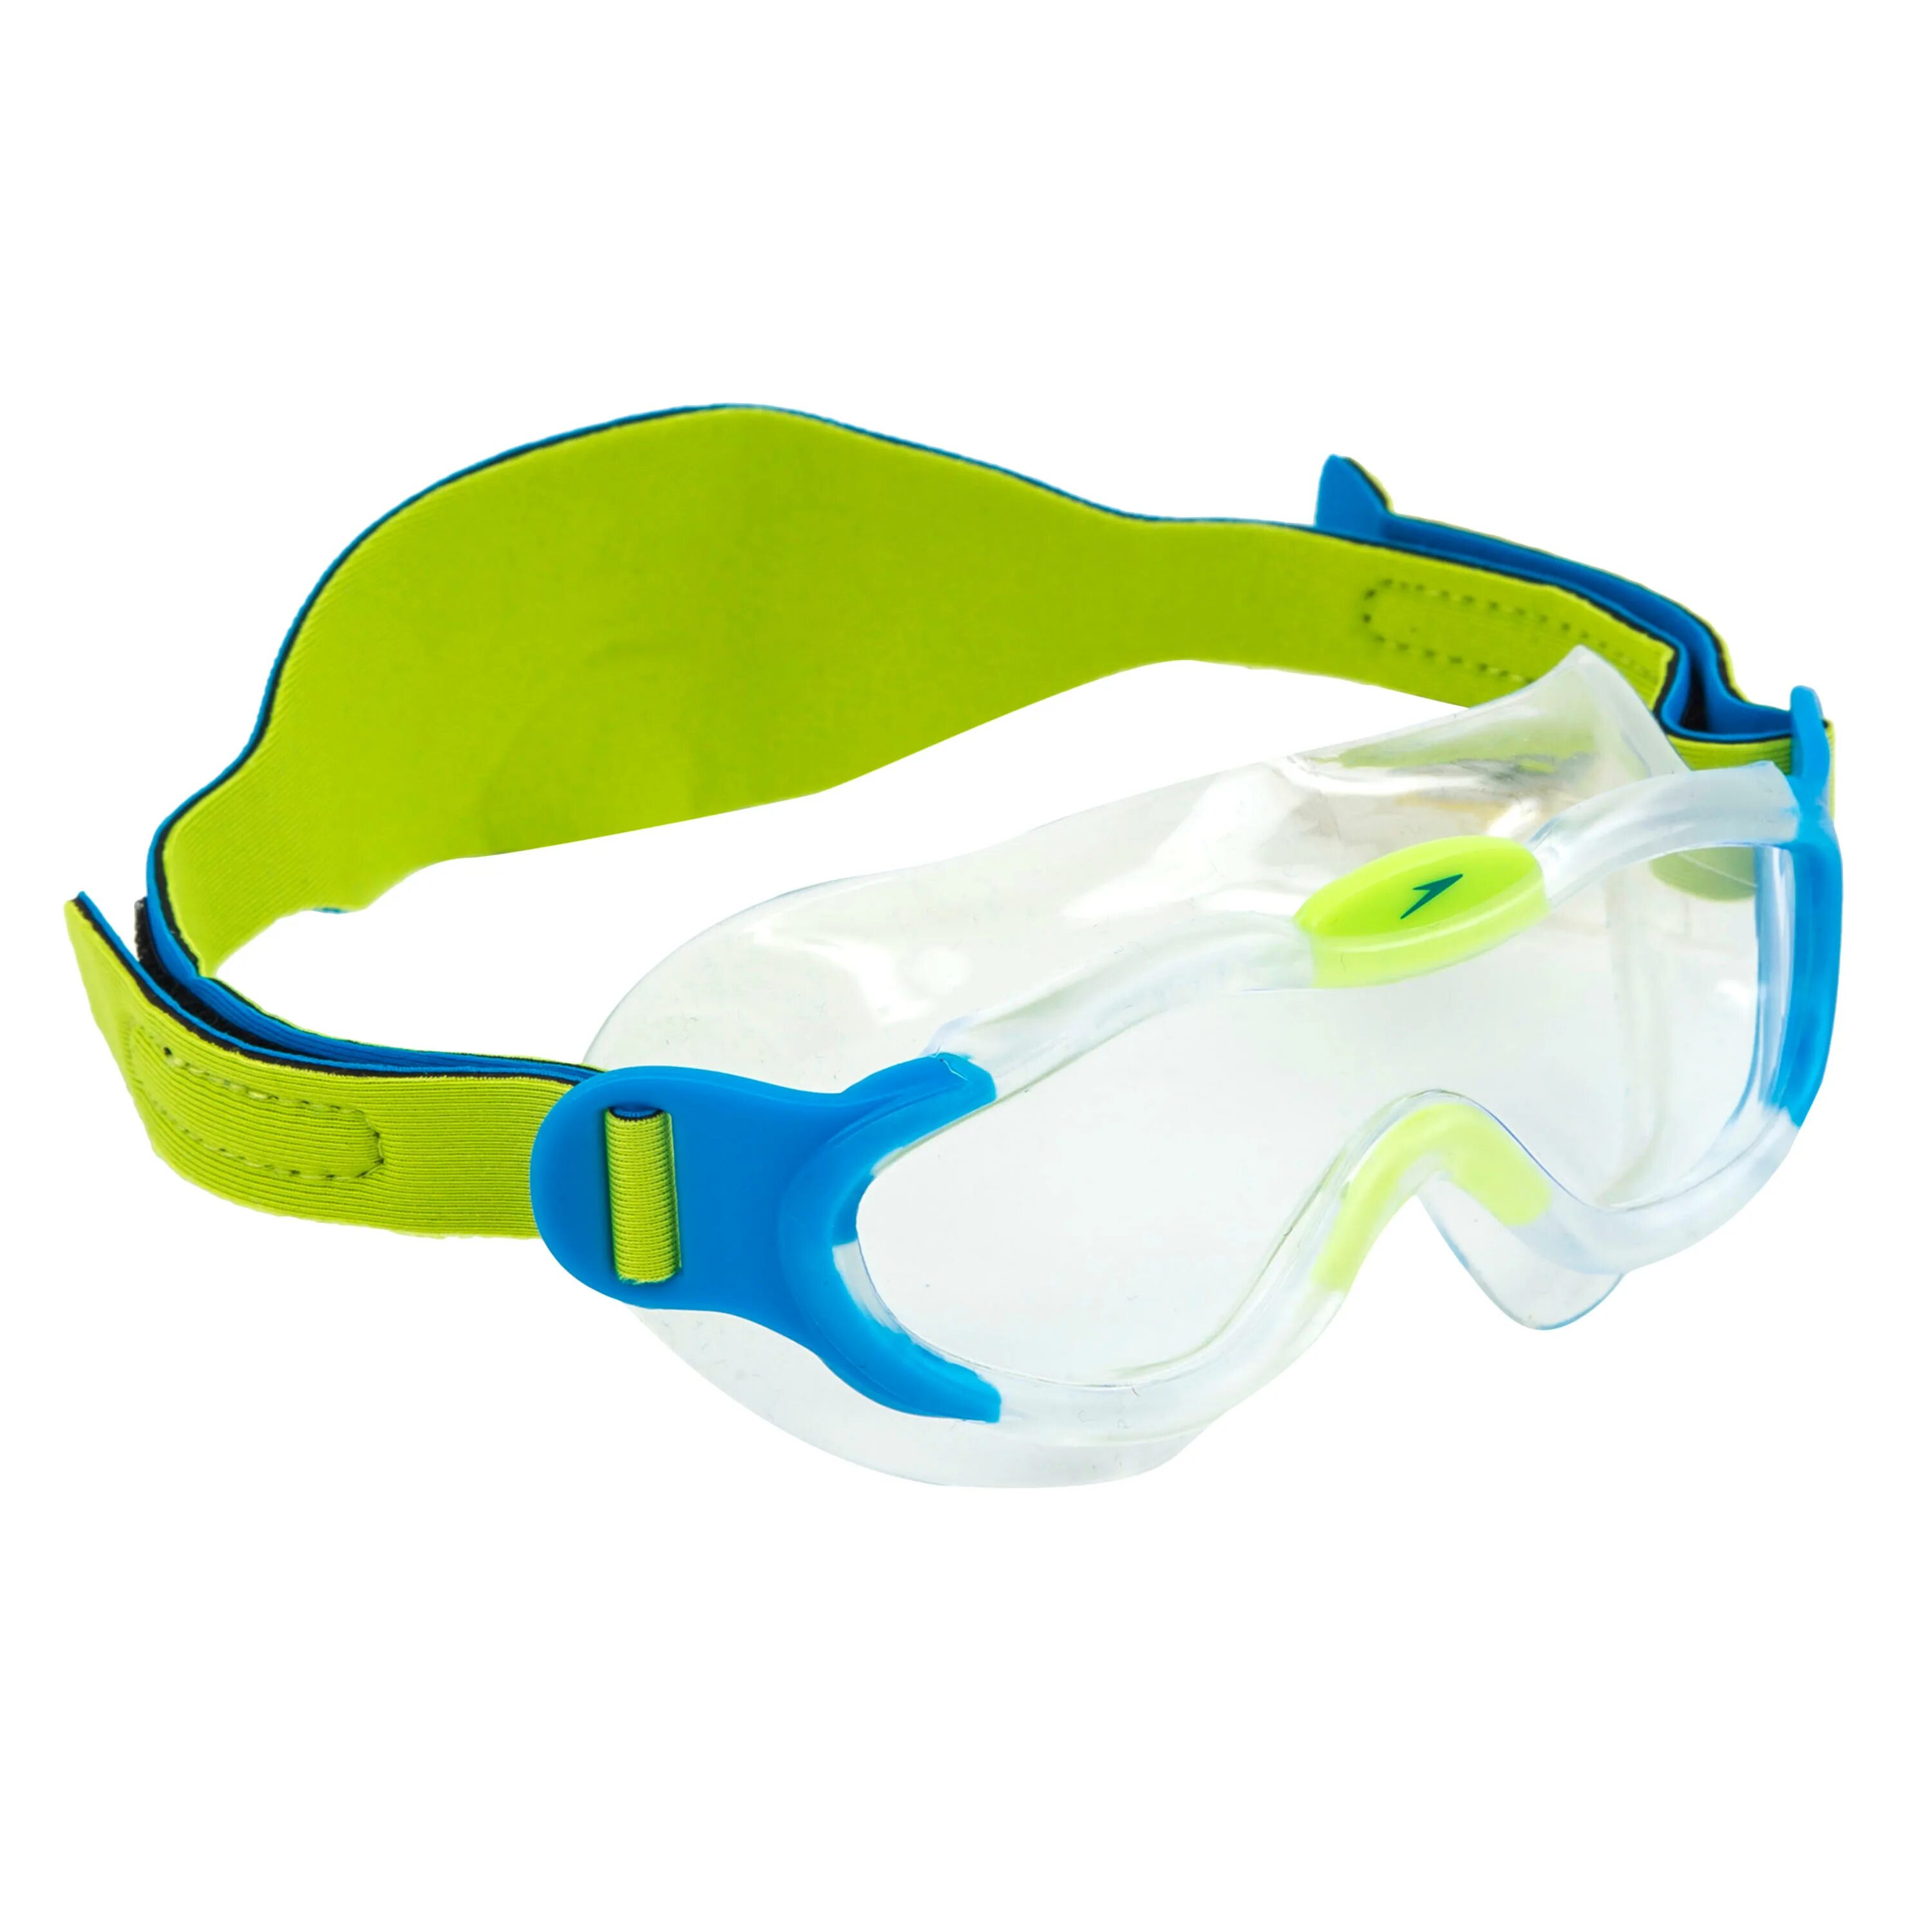 Лучшие маски для плавания. Speedo маска для плавания детская. Speedo маска для плавания взрослая. Маска для плавания Декатлон.